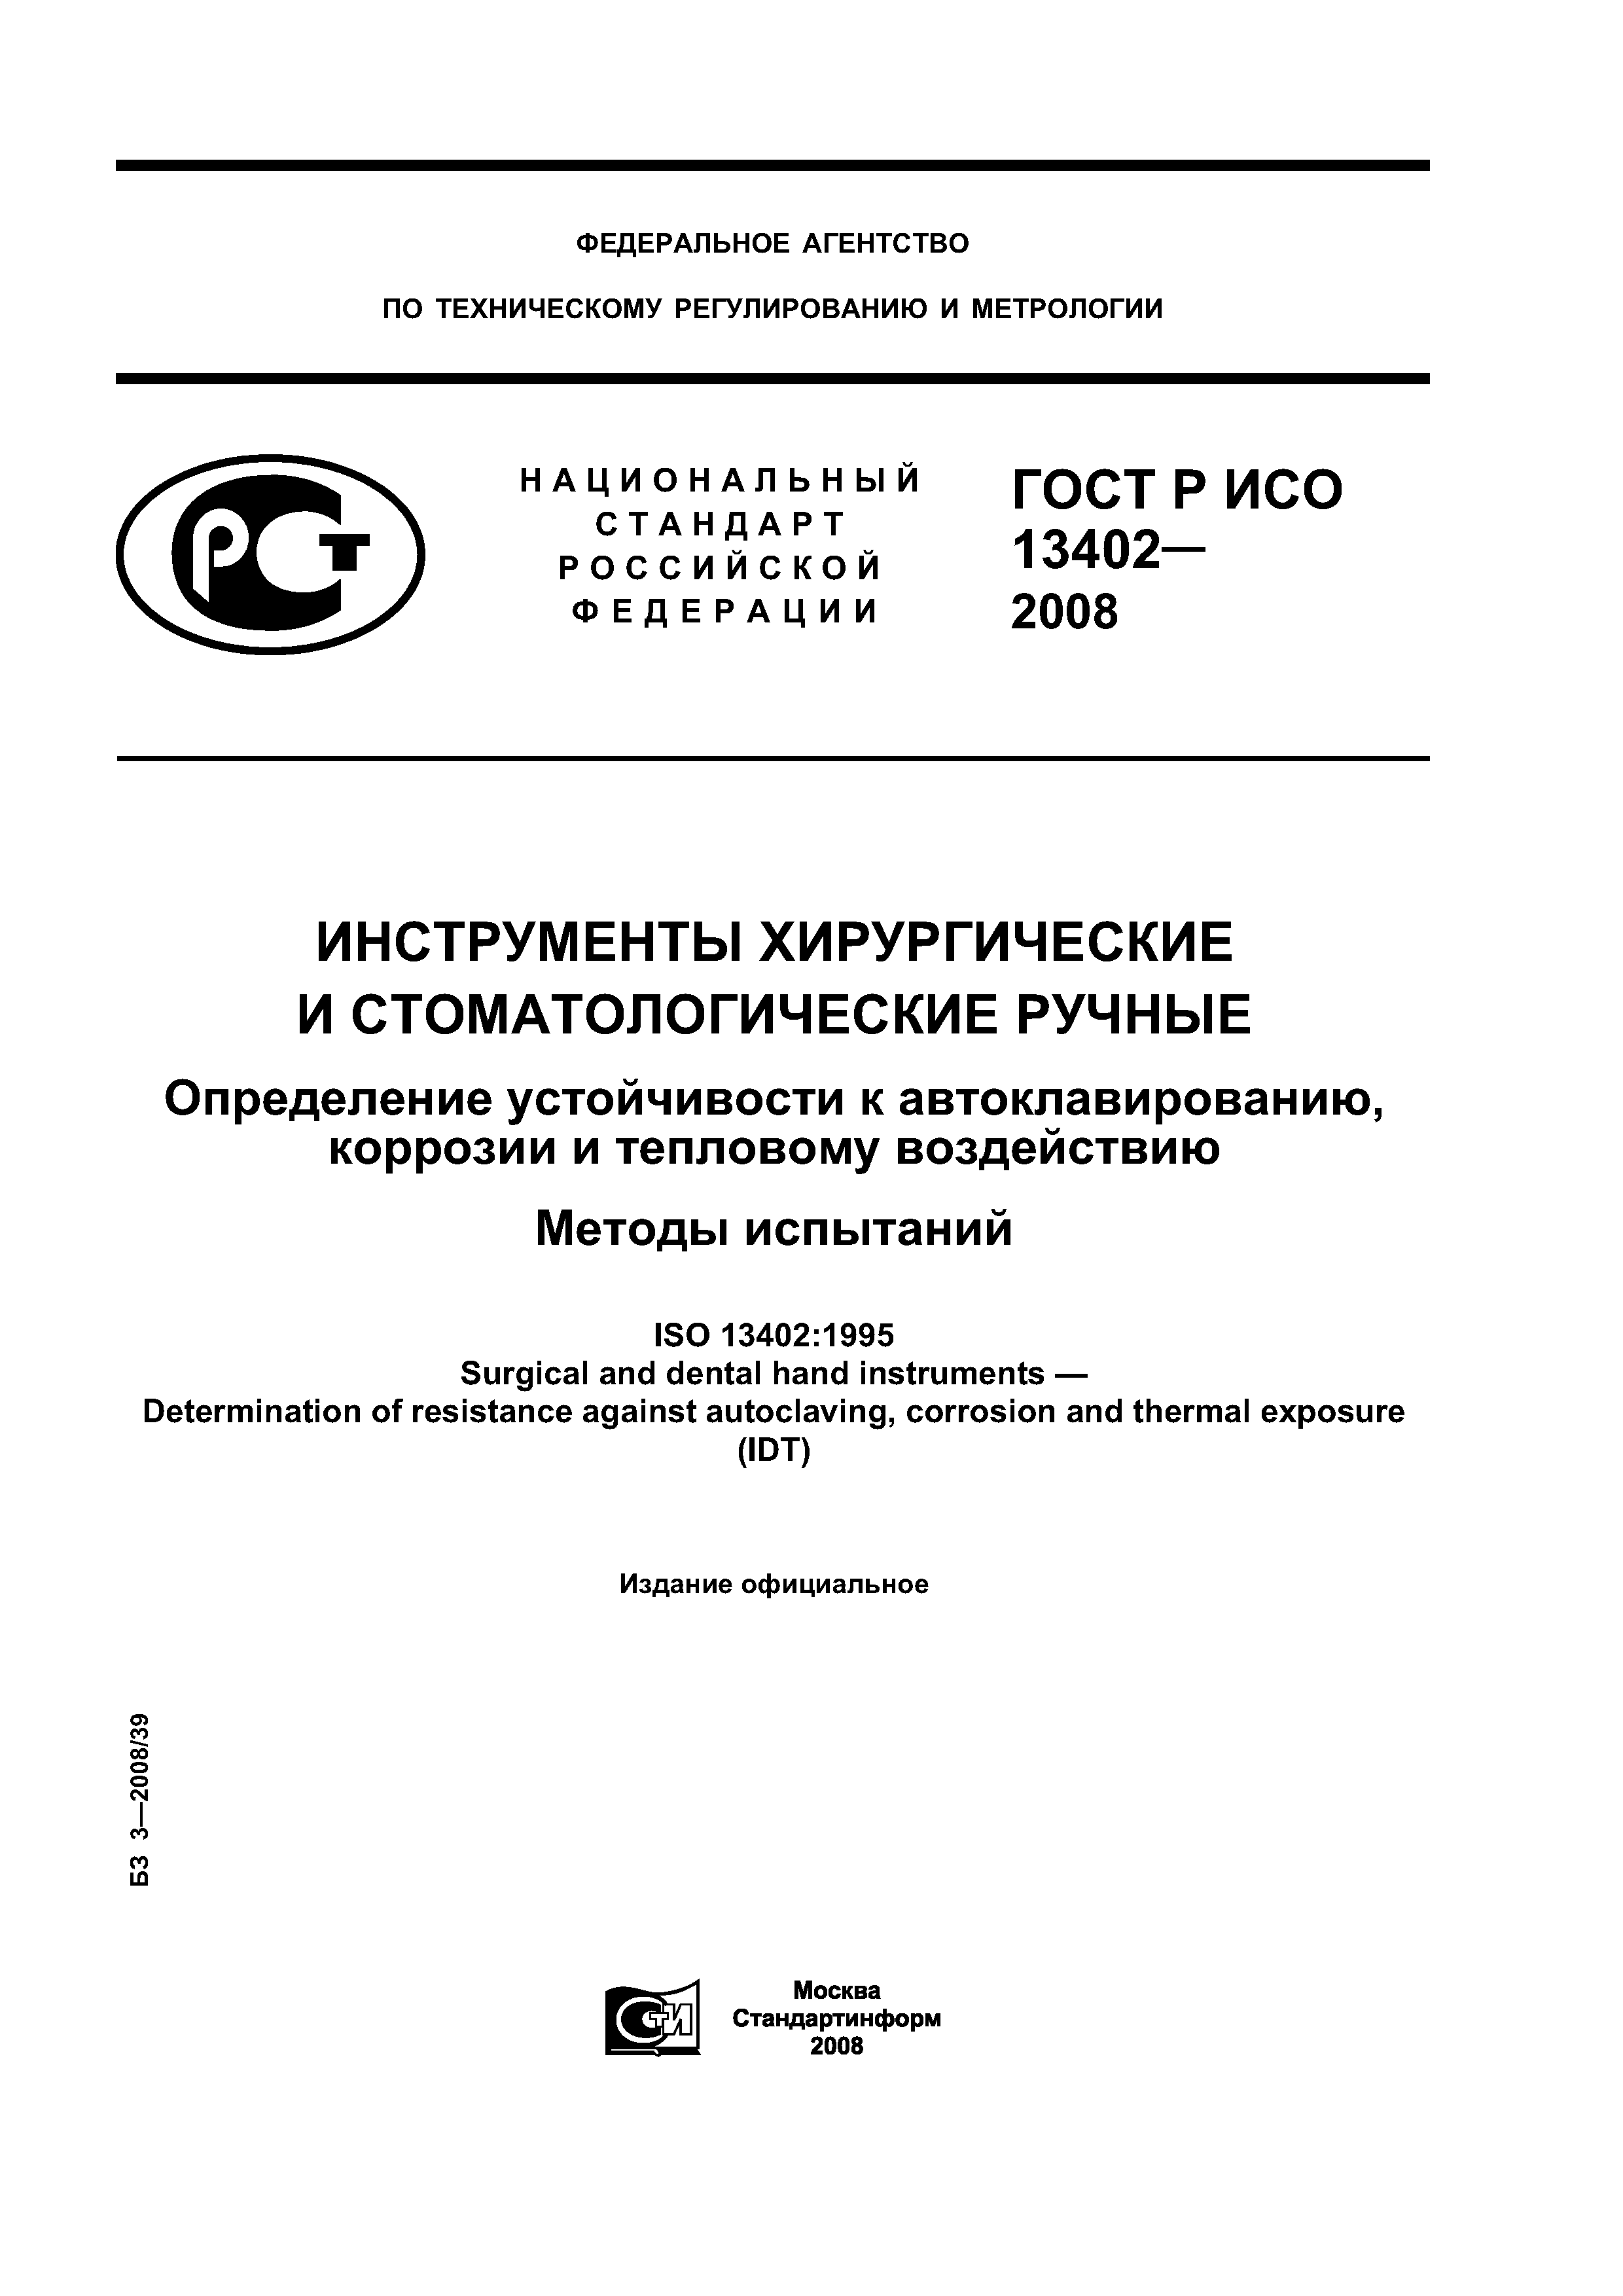 ГОСТ Р ИСО 13402-2008